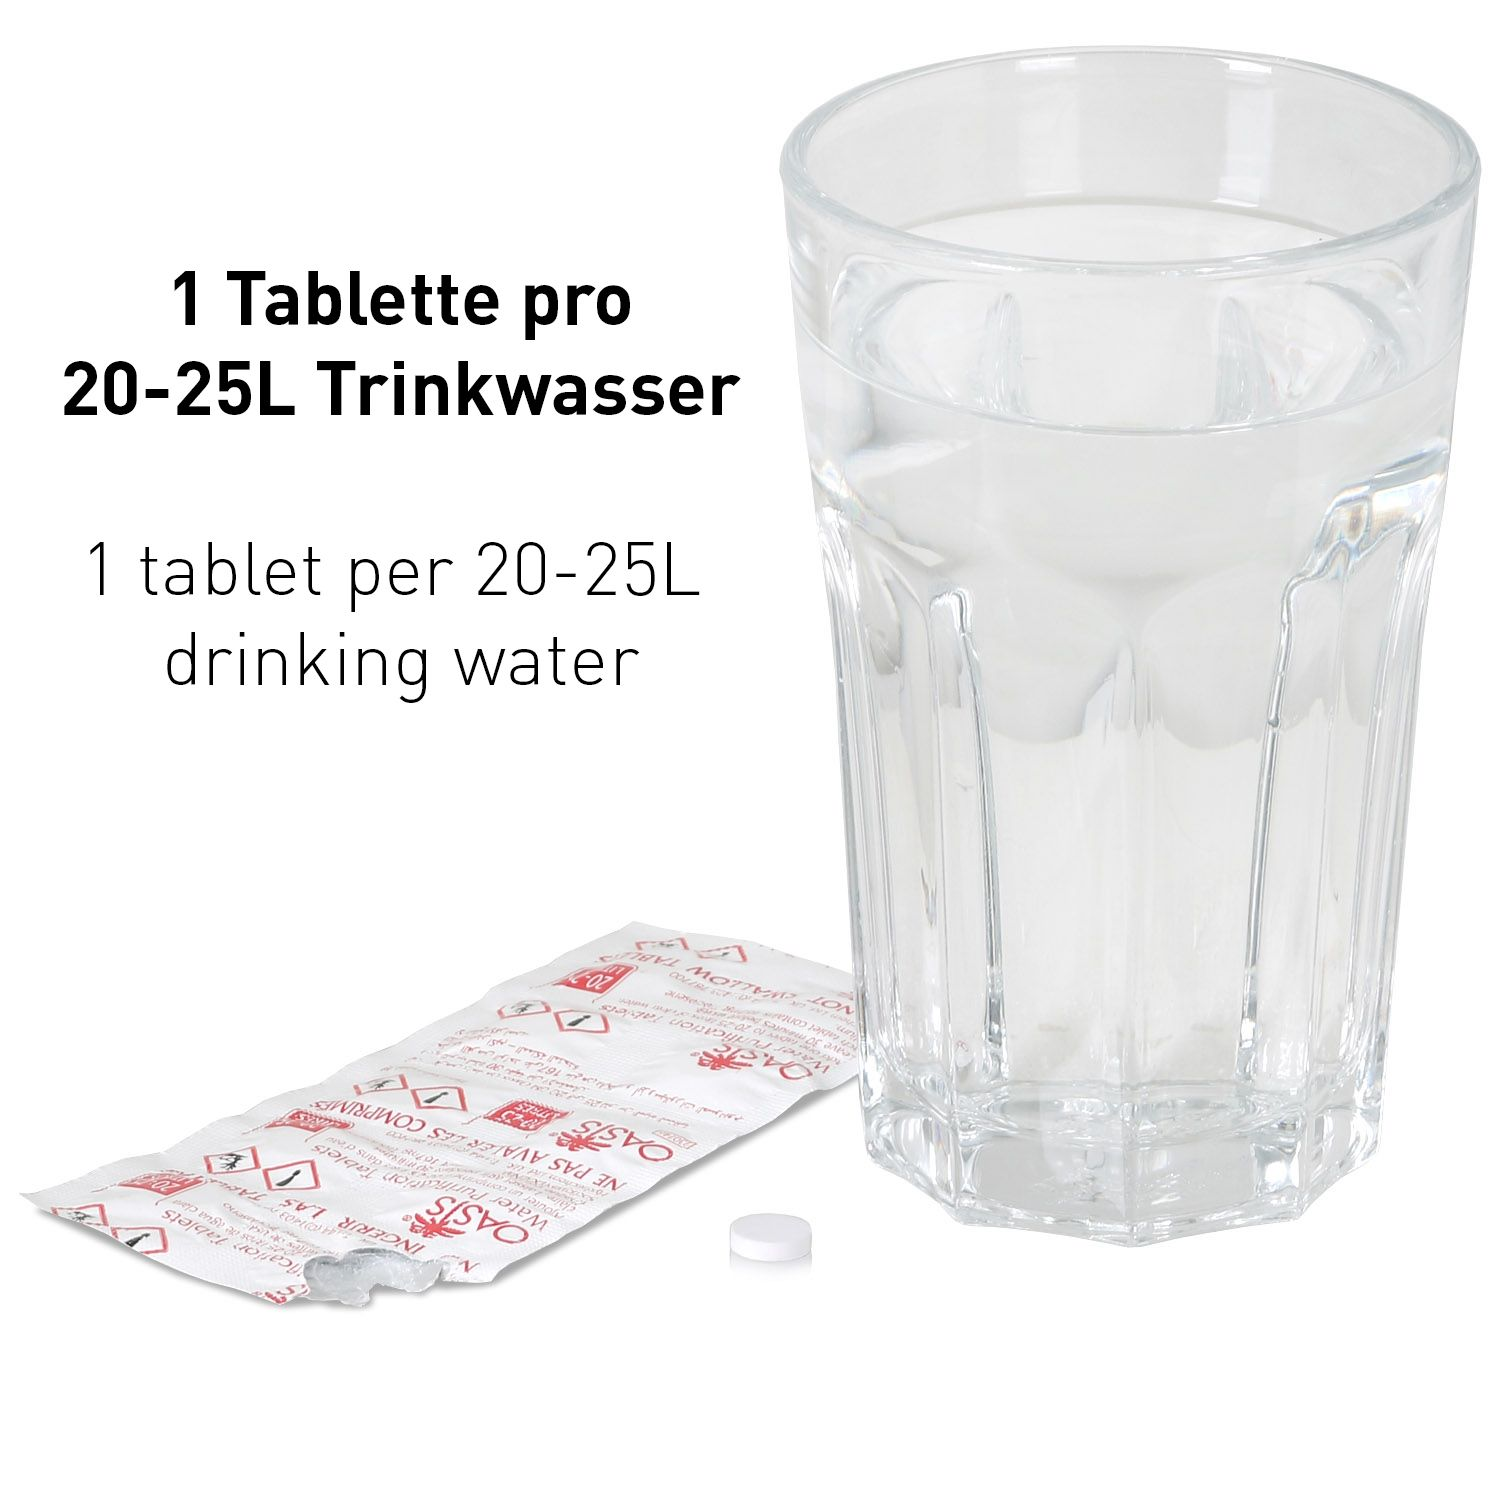 Waterrower und - Trinkwasser CHILI WICKED für Reiseapotheke 10x pro L Tablette, 20-25 Wasserreinigungstabletten Chlortabletten